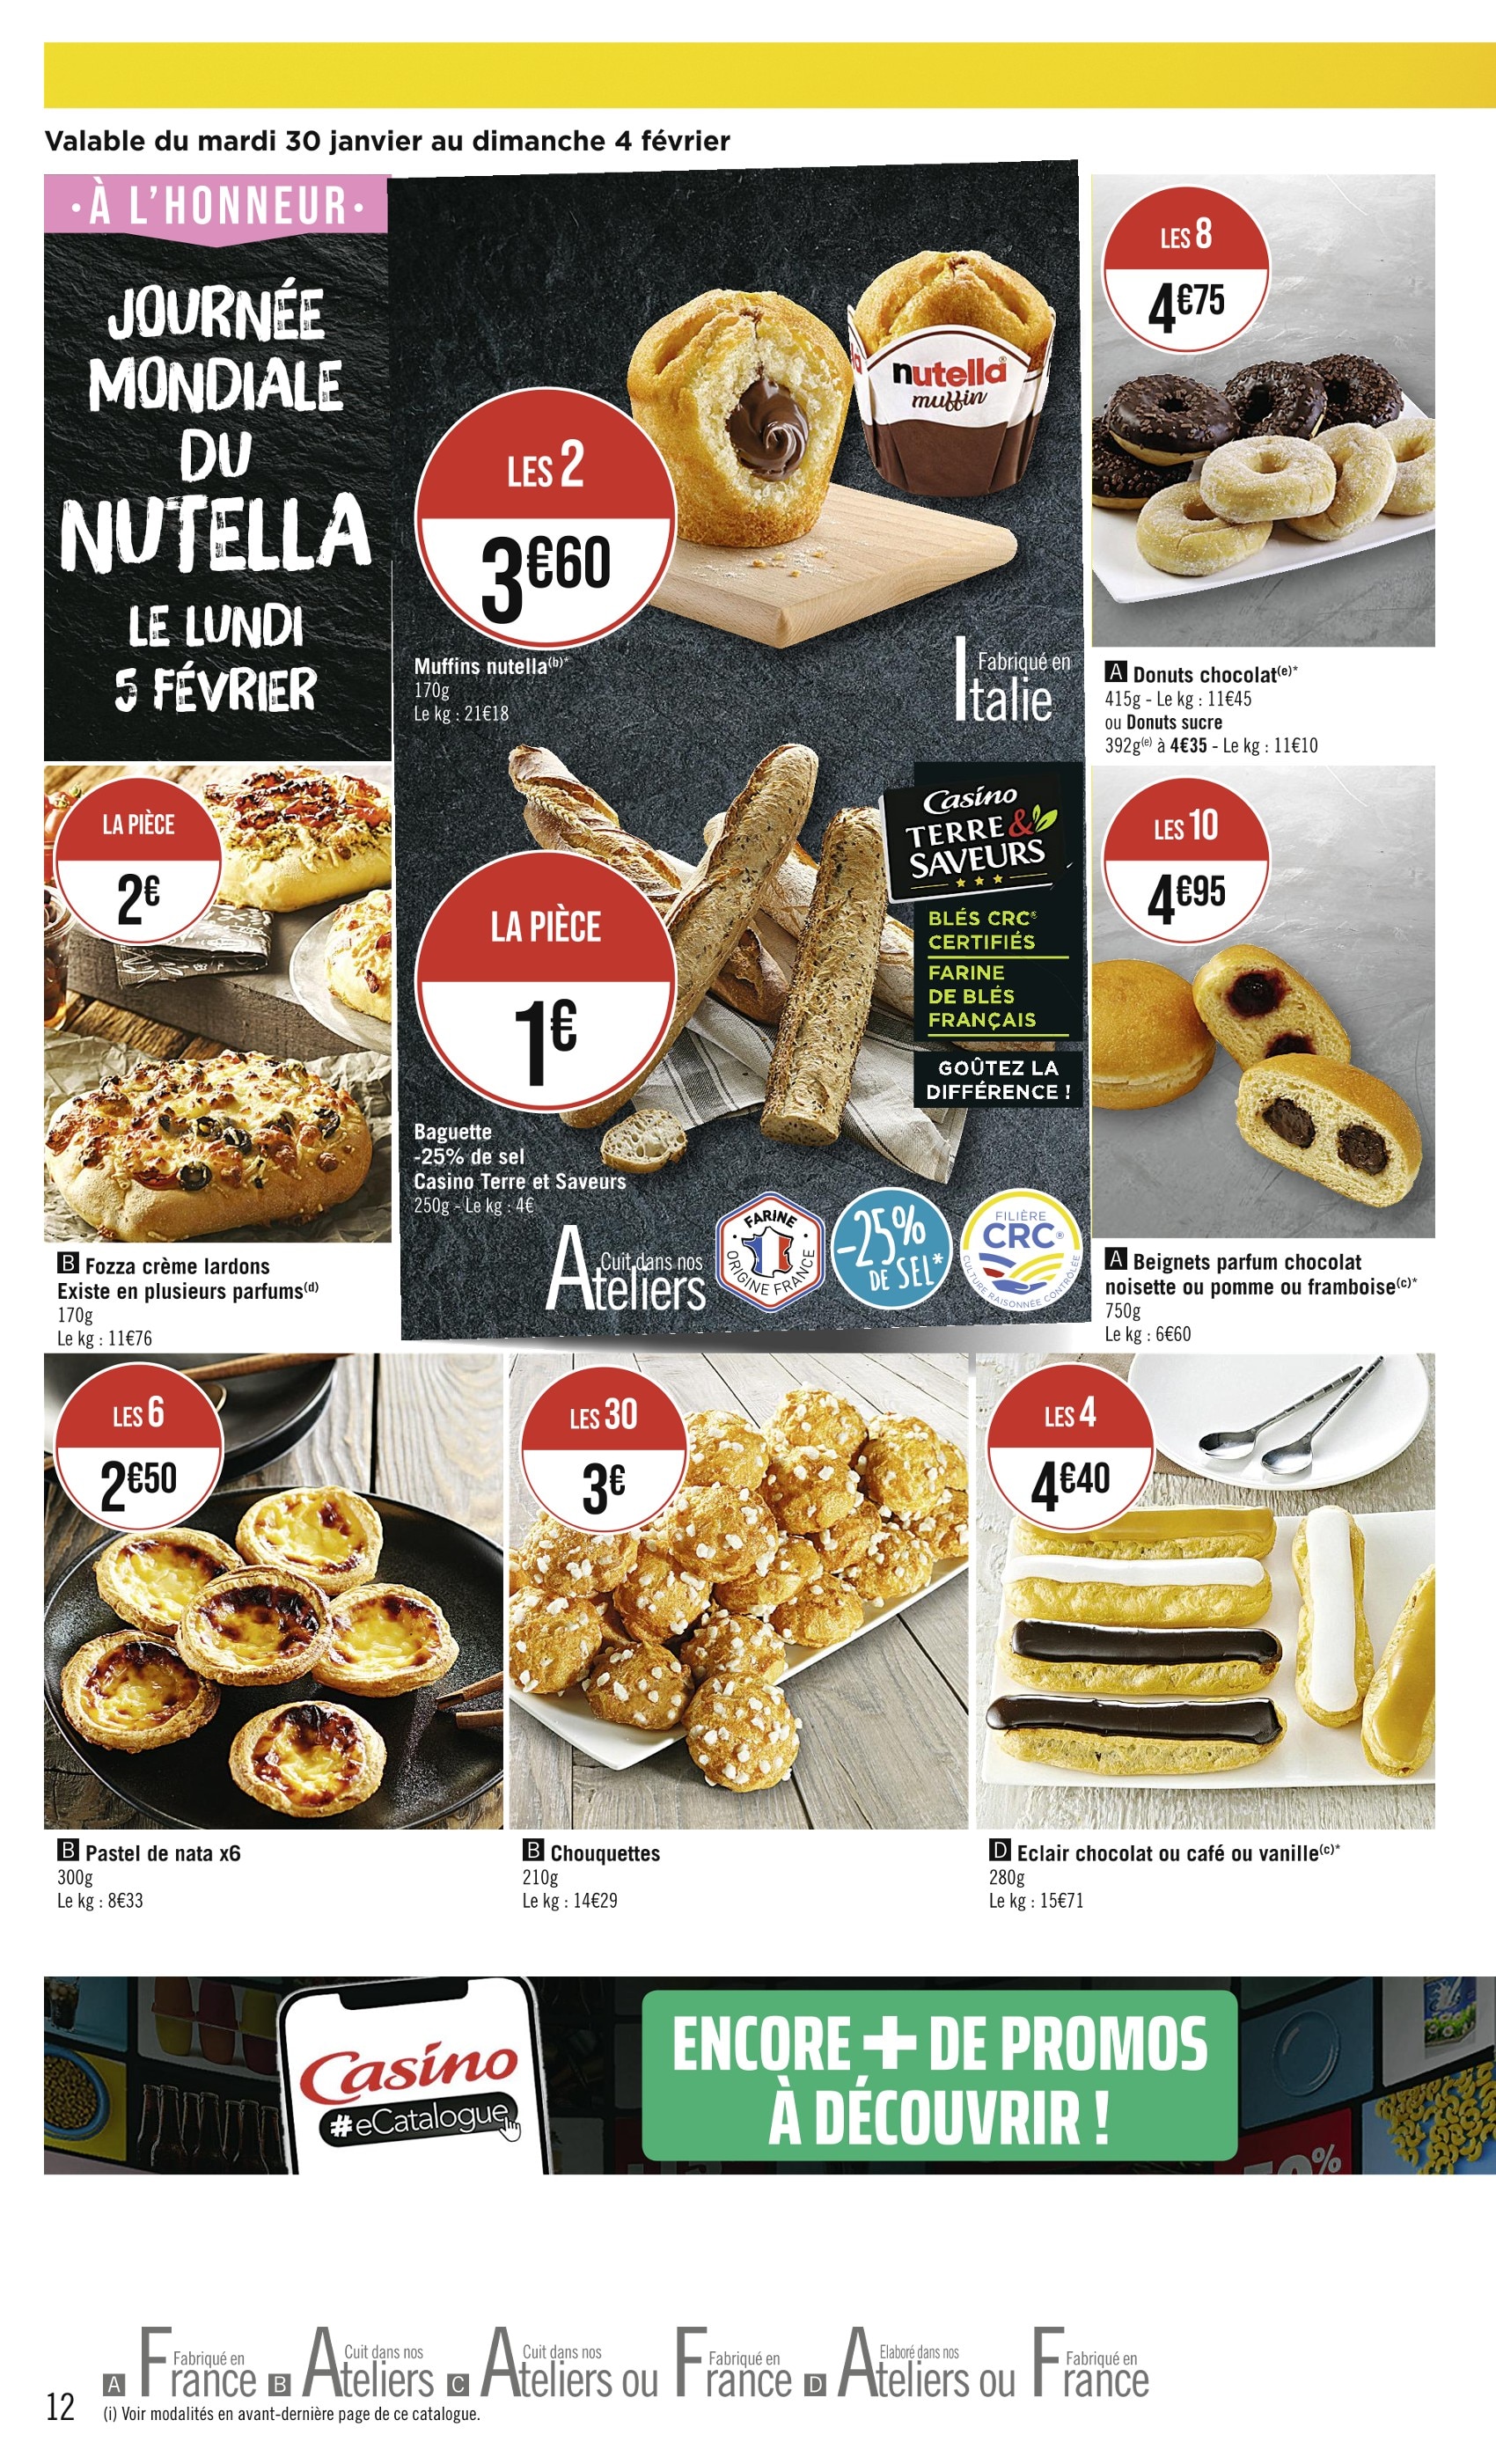 Muffin Lidl ᐅ Promos et prix dans le catalogue de la semaine